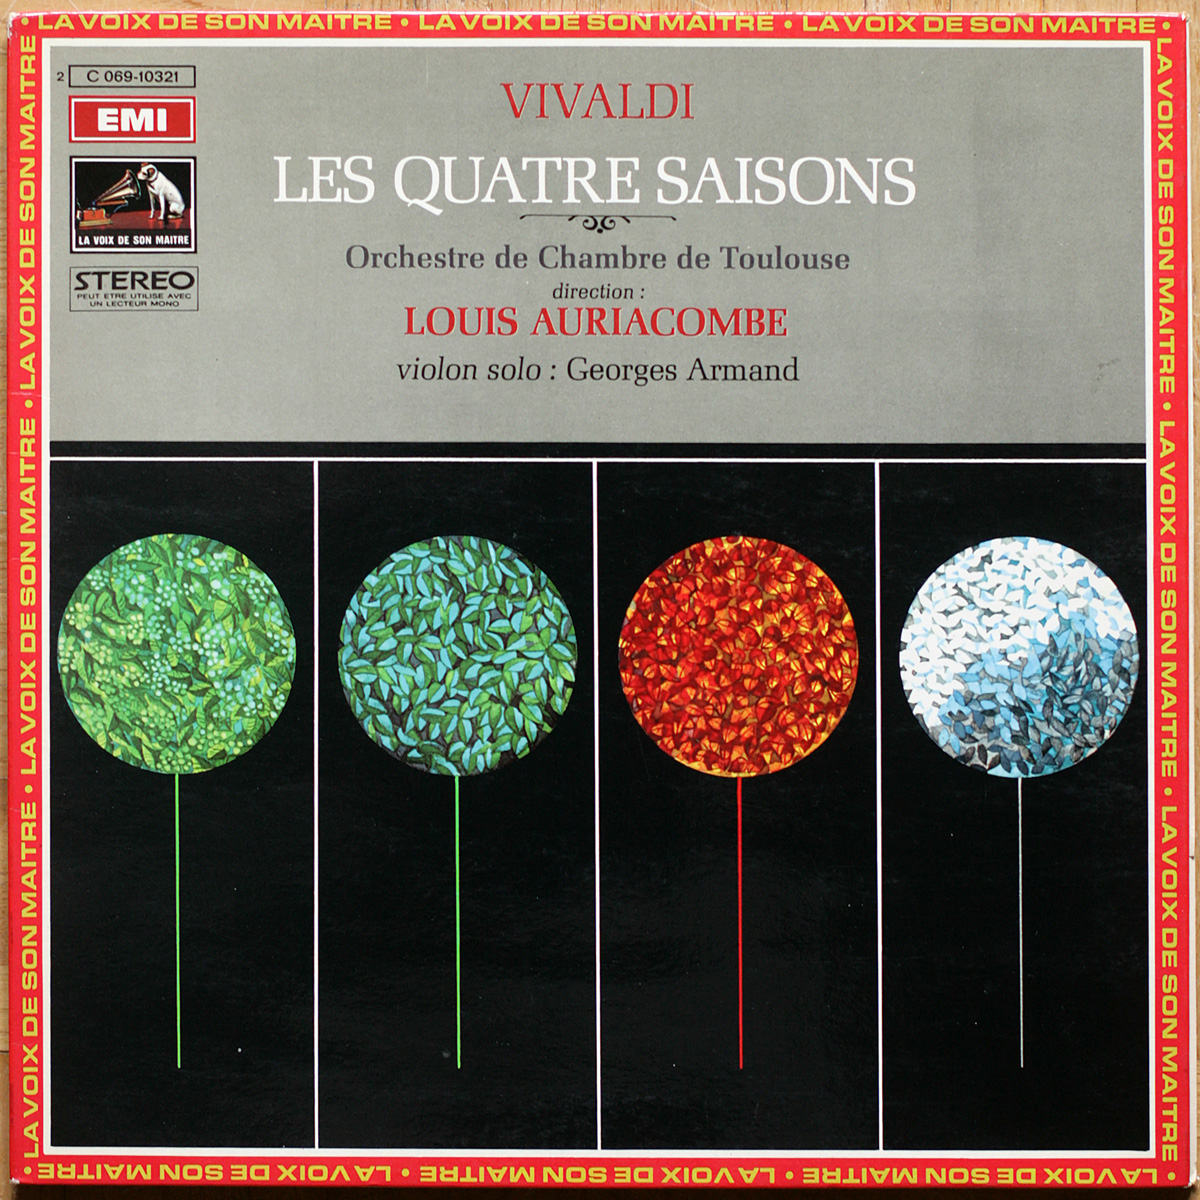 Vivaldi • Les quatre saisons • Le quattro stagioni • The four seasons • EMI 2C 069-10321 • Georges Armand • Orchestre de chambre de Toulouse • Louis Auriacombe